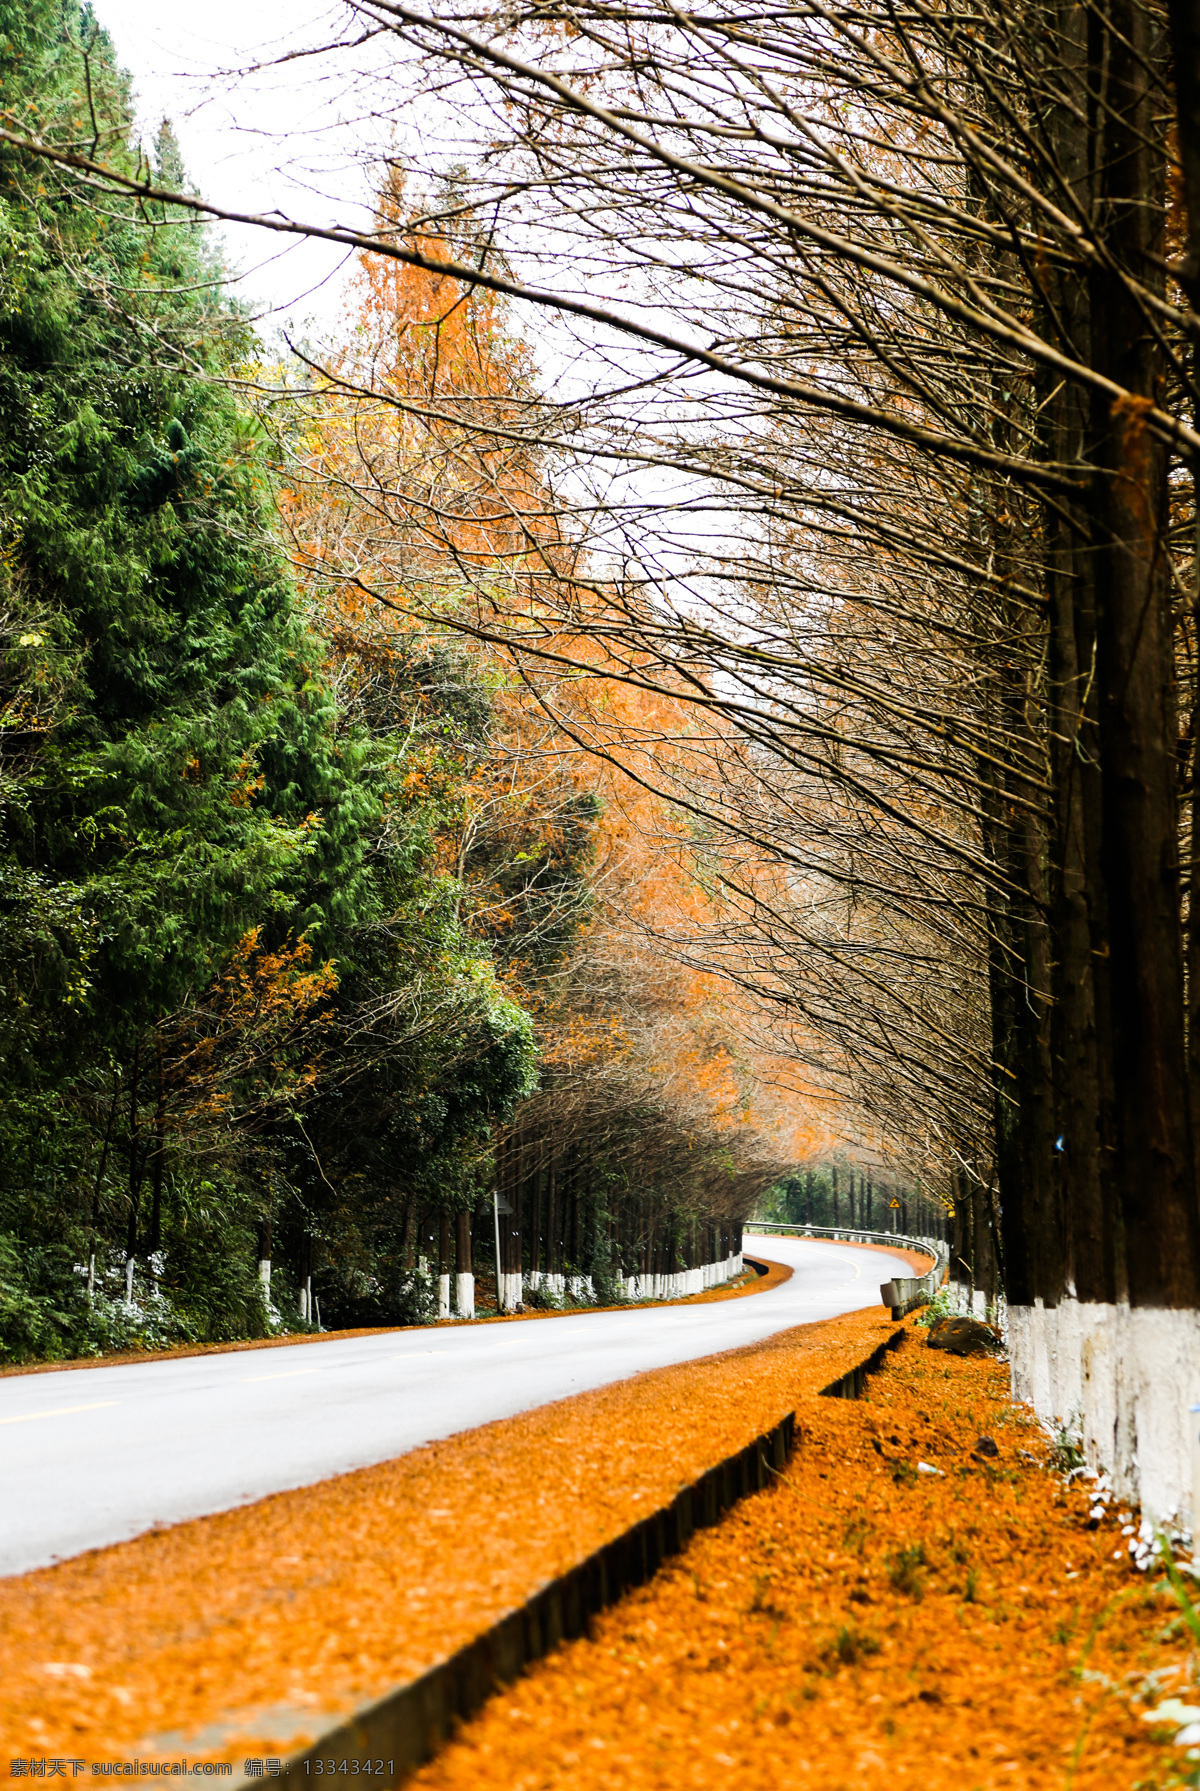 秋天 里 乡村 公路 深秋色彩 橙黄 暖意 秋天的乡道 爱在深秋 自然景观 自然风景